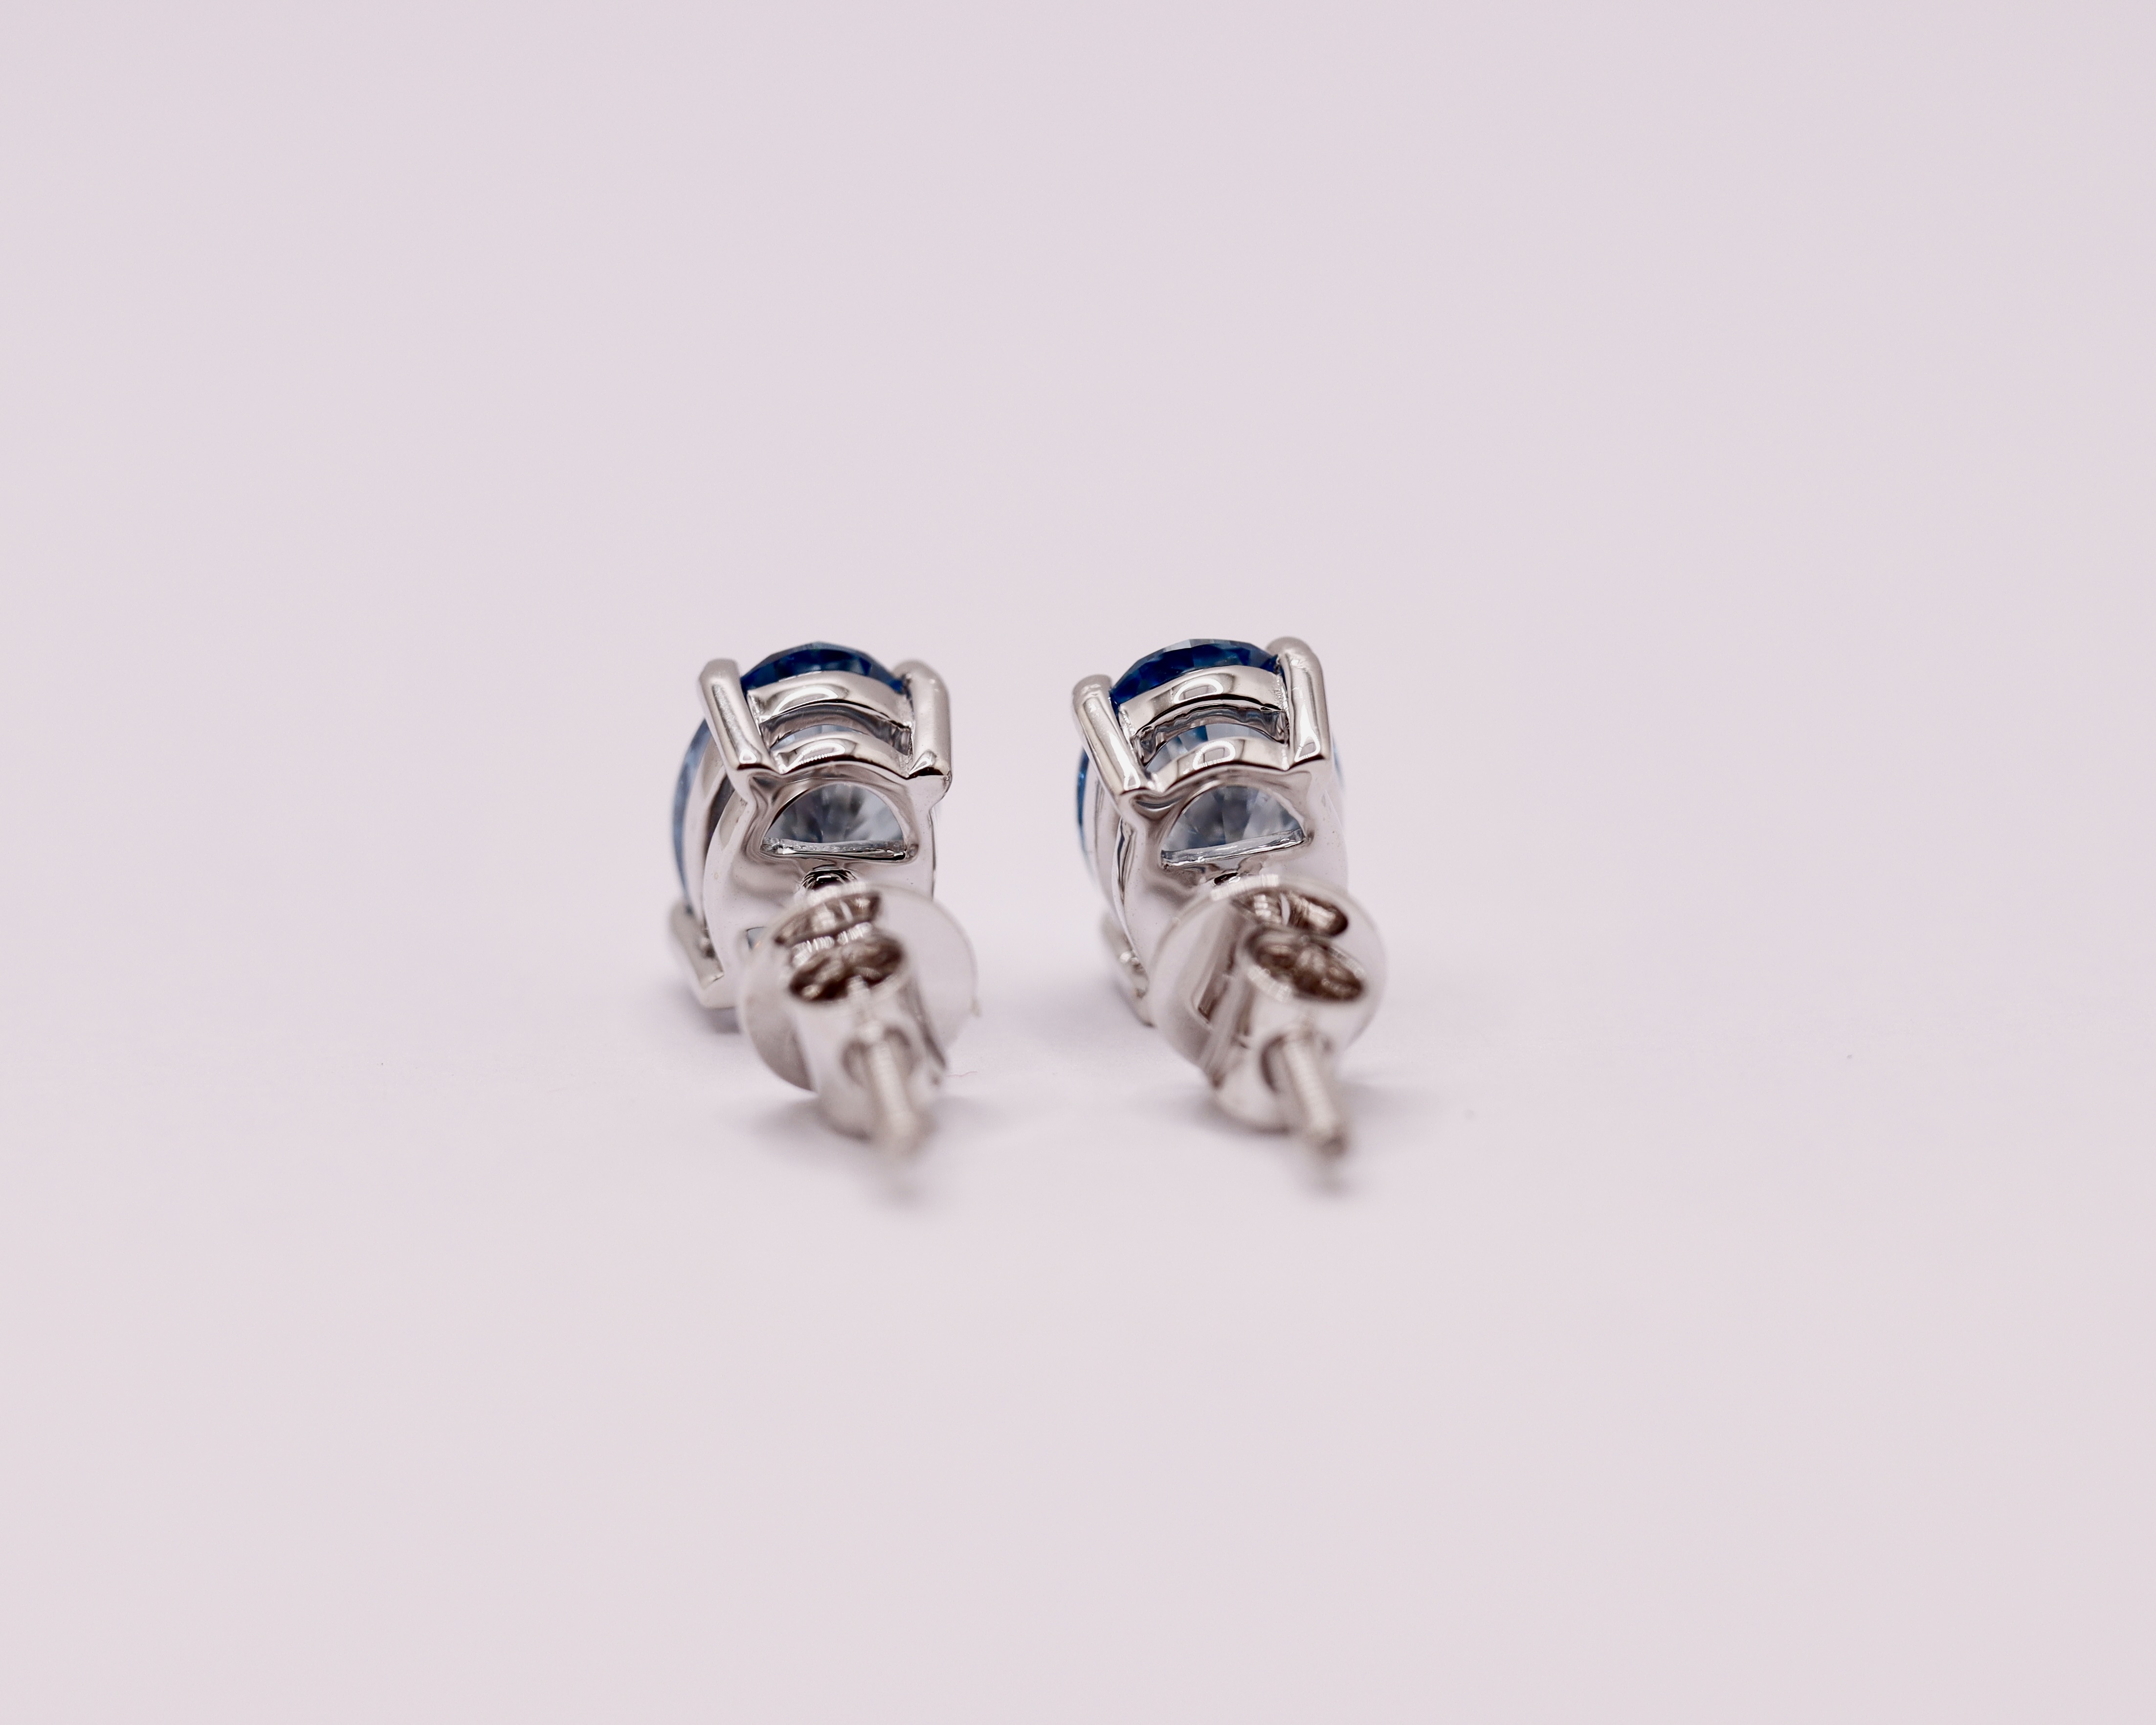 Fancy Blue Oval Cut 2.25 Carat Diamond 18Kt White Gold Earring Set -VS1 Clarity - Image 7 of 13